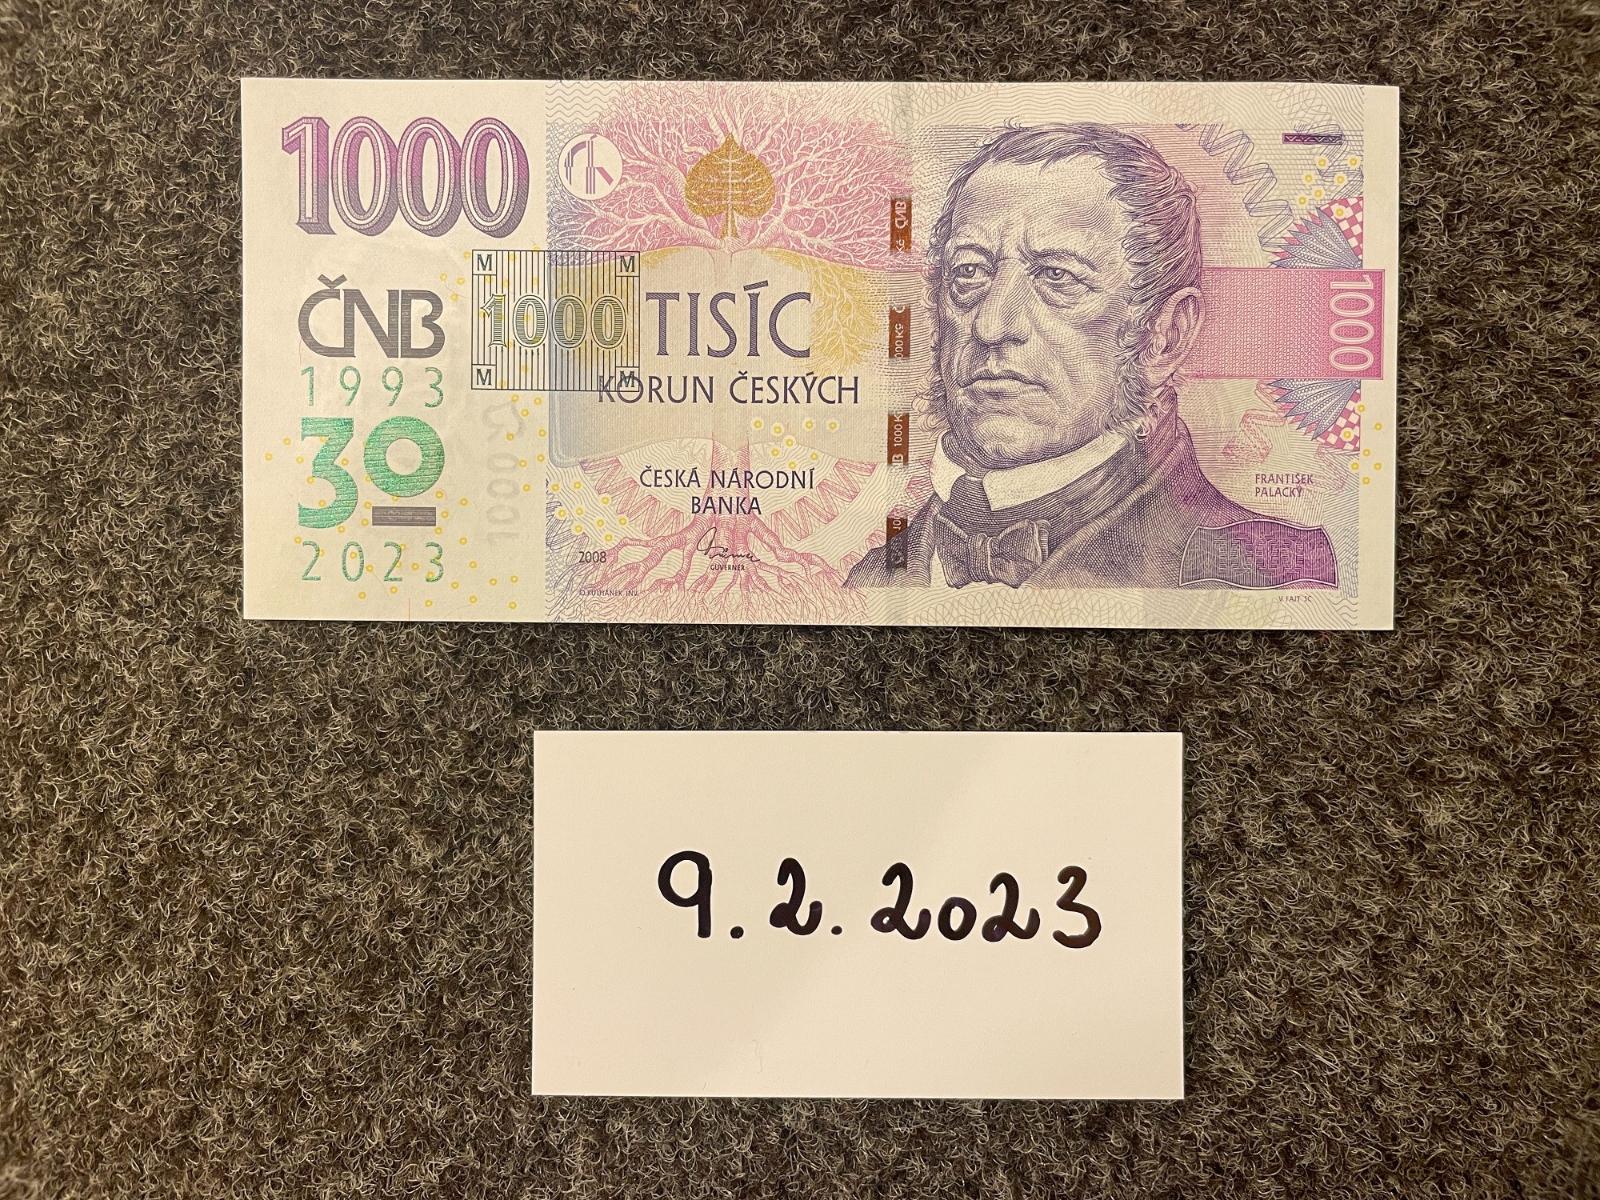 1000 Kč 2008 S PRETLAČOM ČNB 2023 - Nízke číslo: 282 - Bankovky